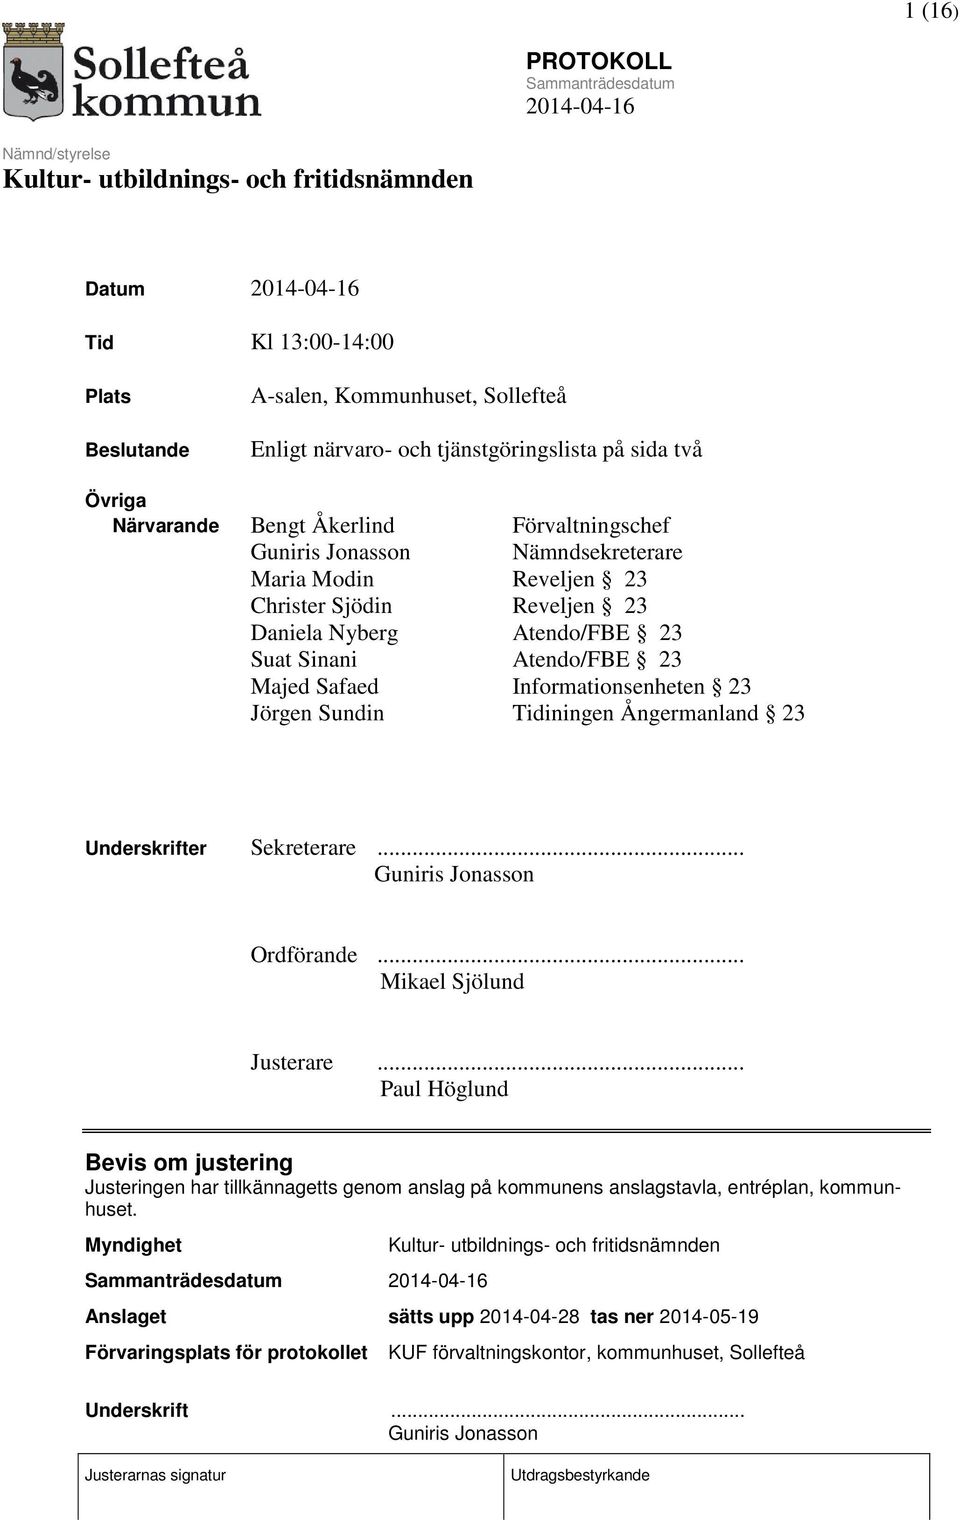 Ångermanland 23 Underskrifter Sekreterare... Guniris Jonasson Ordförande... Mikael Sjölund Justerare.